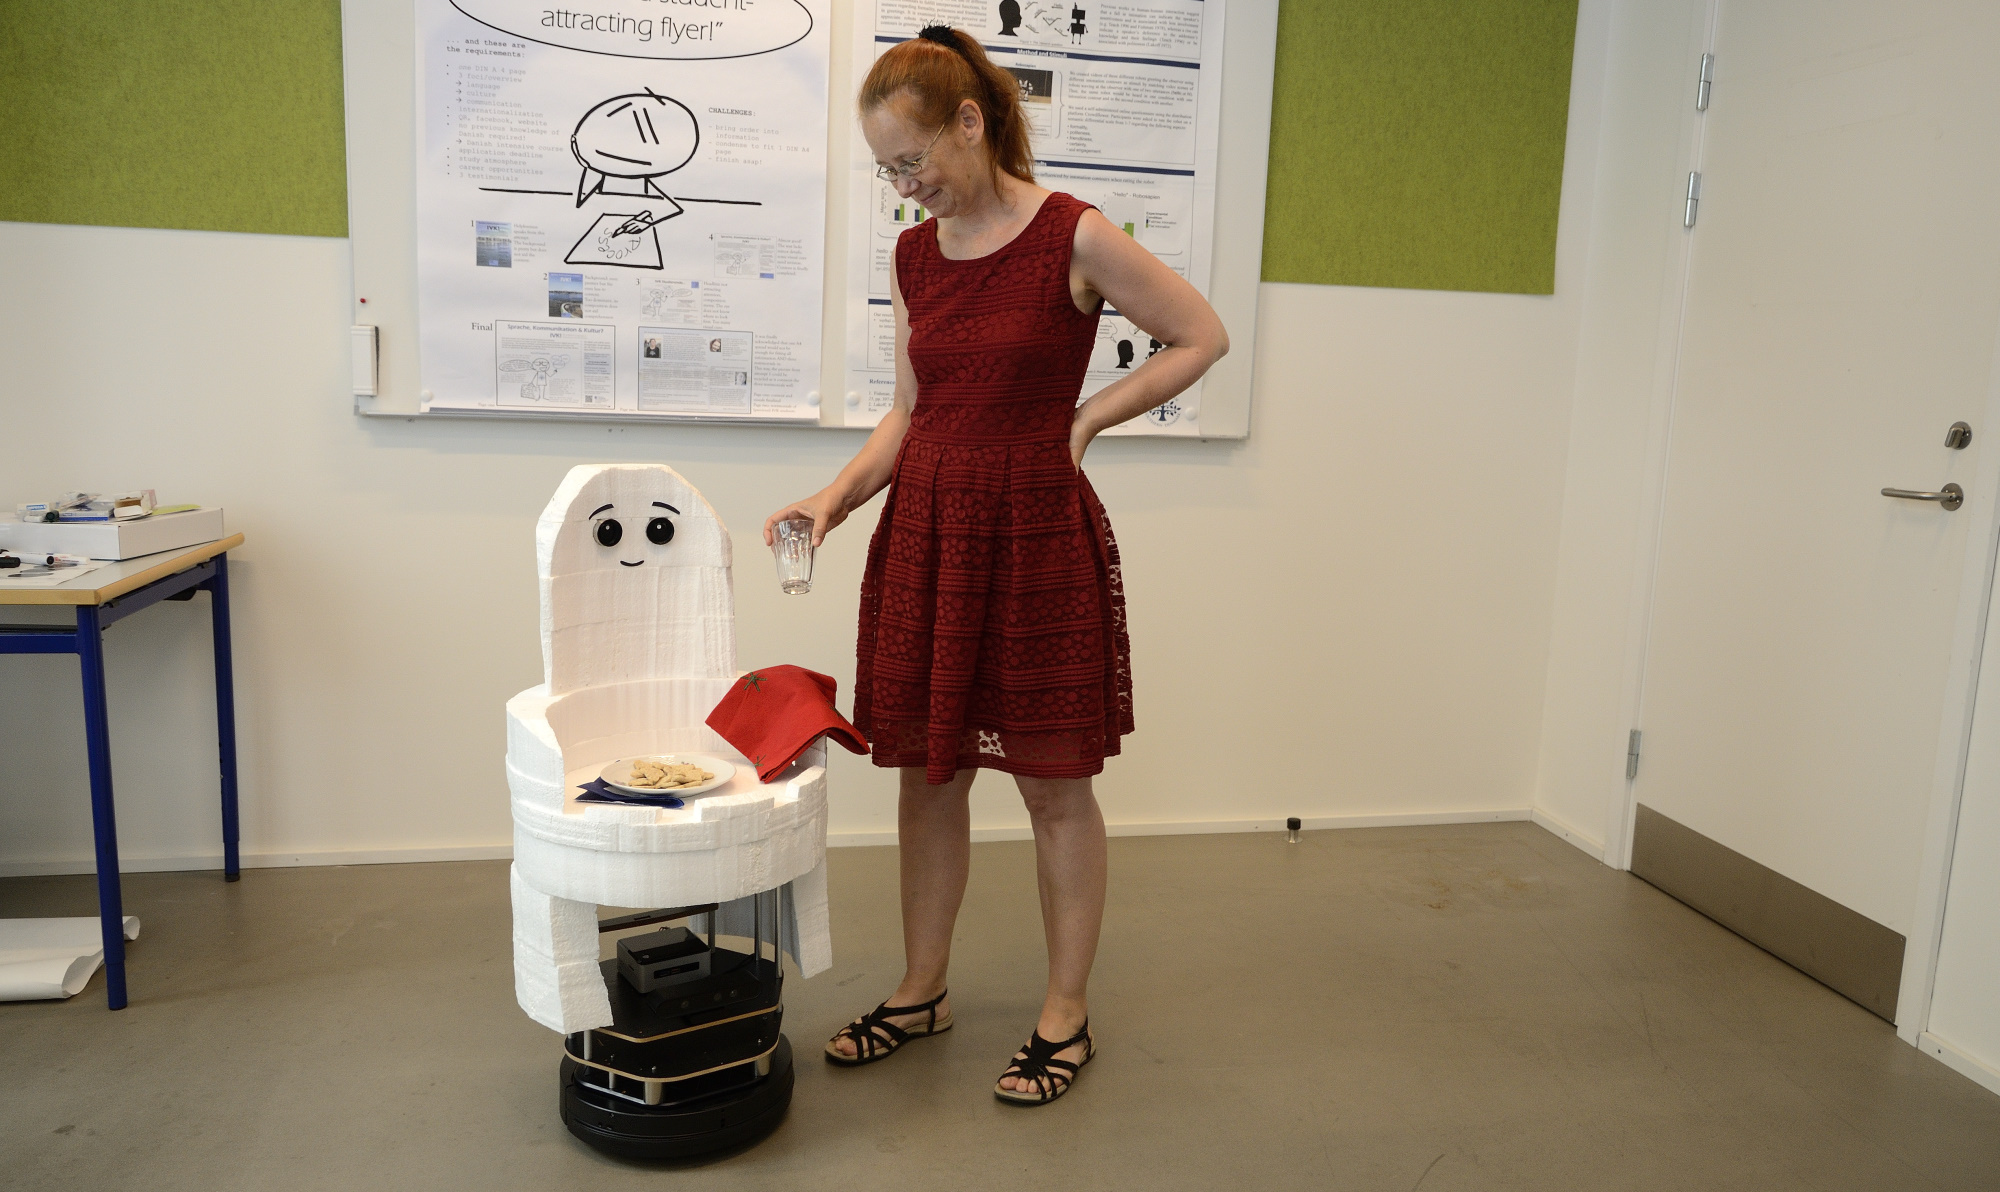 Kerstin Fischer presenting the Casper Turtlebot